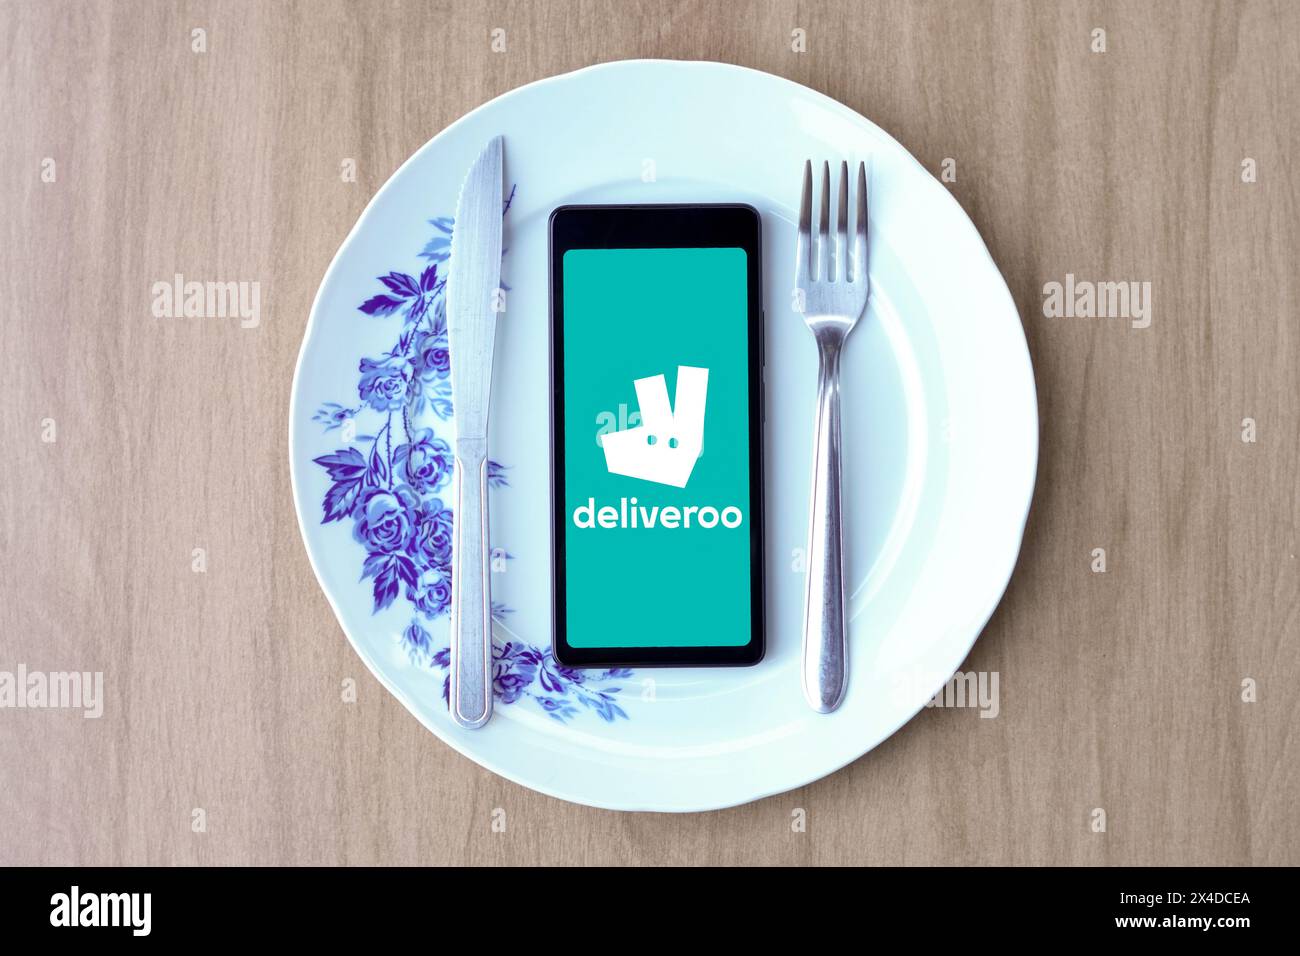 In dieser Fotoabbildung wird das Deliveroo Logo auf einem Smartphone-Bildschirm auf einem Teller mit Besteck angezeigt. Stockfoto